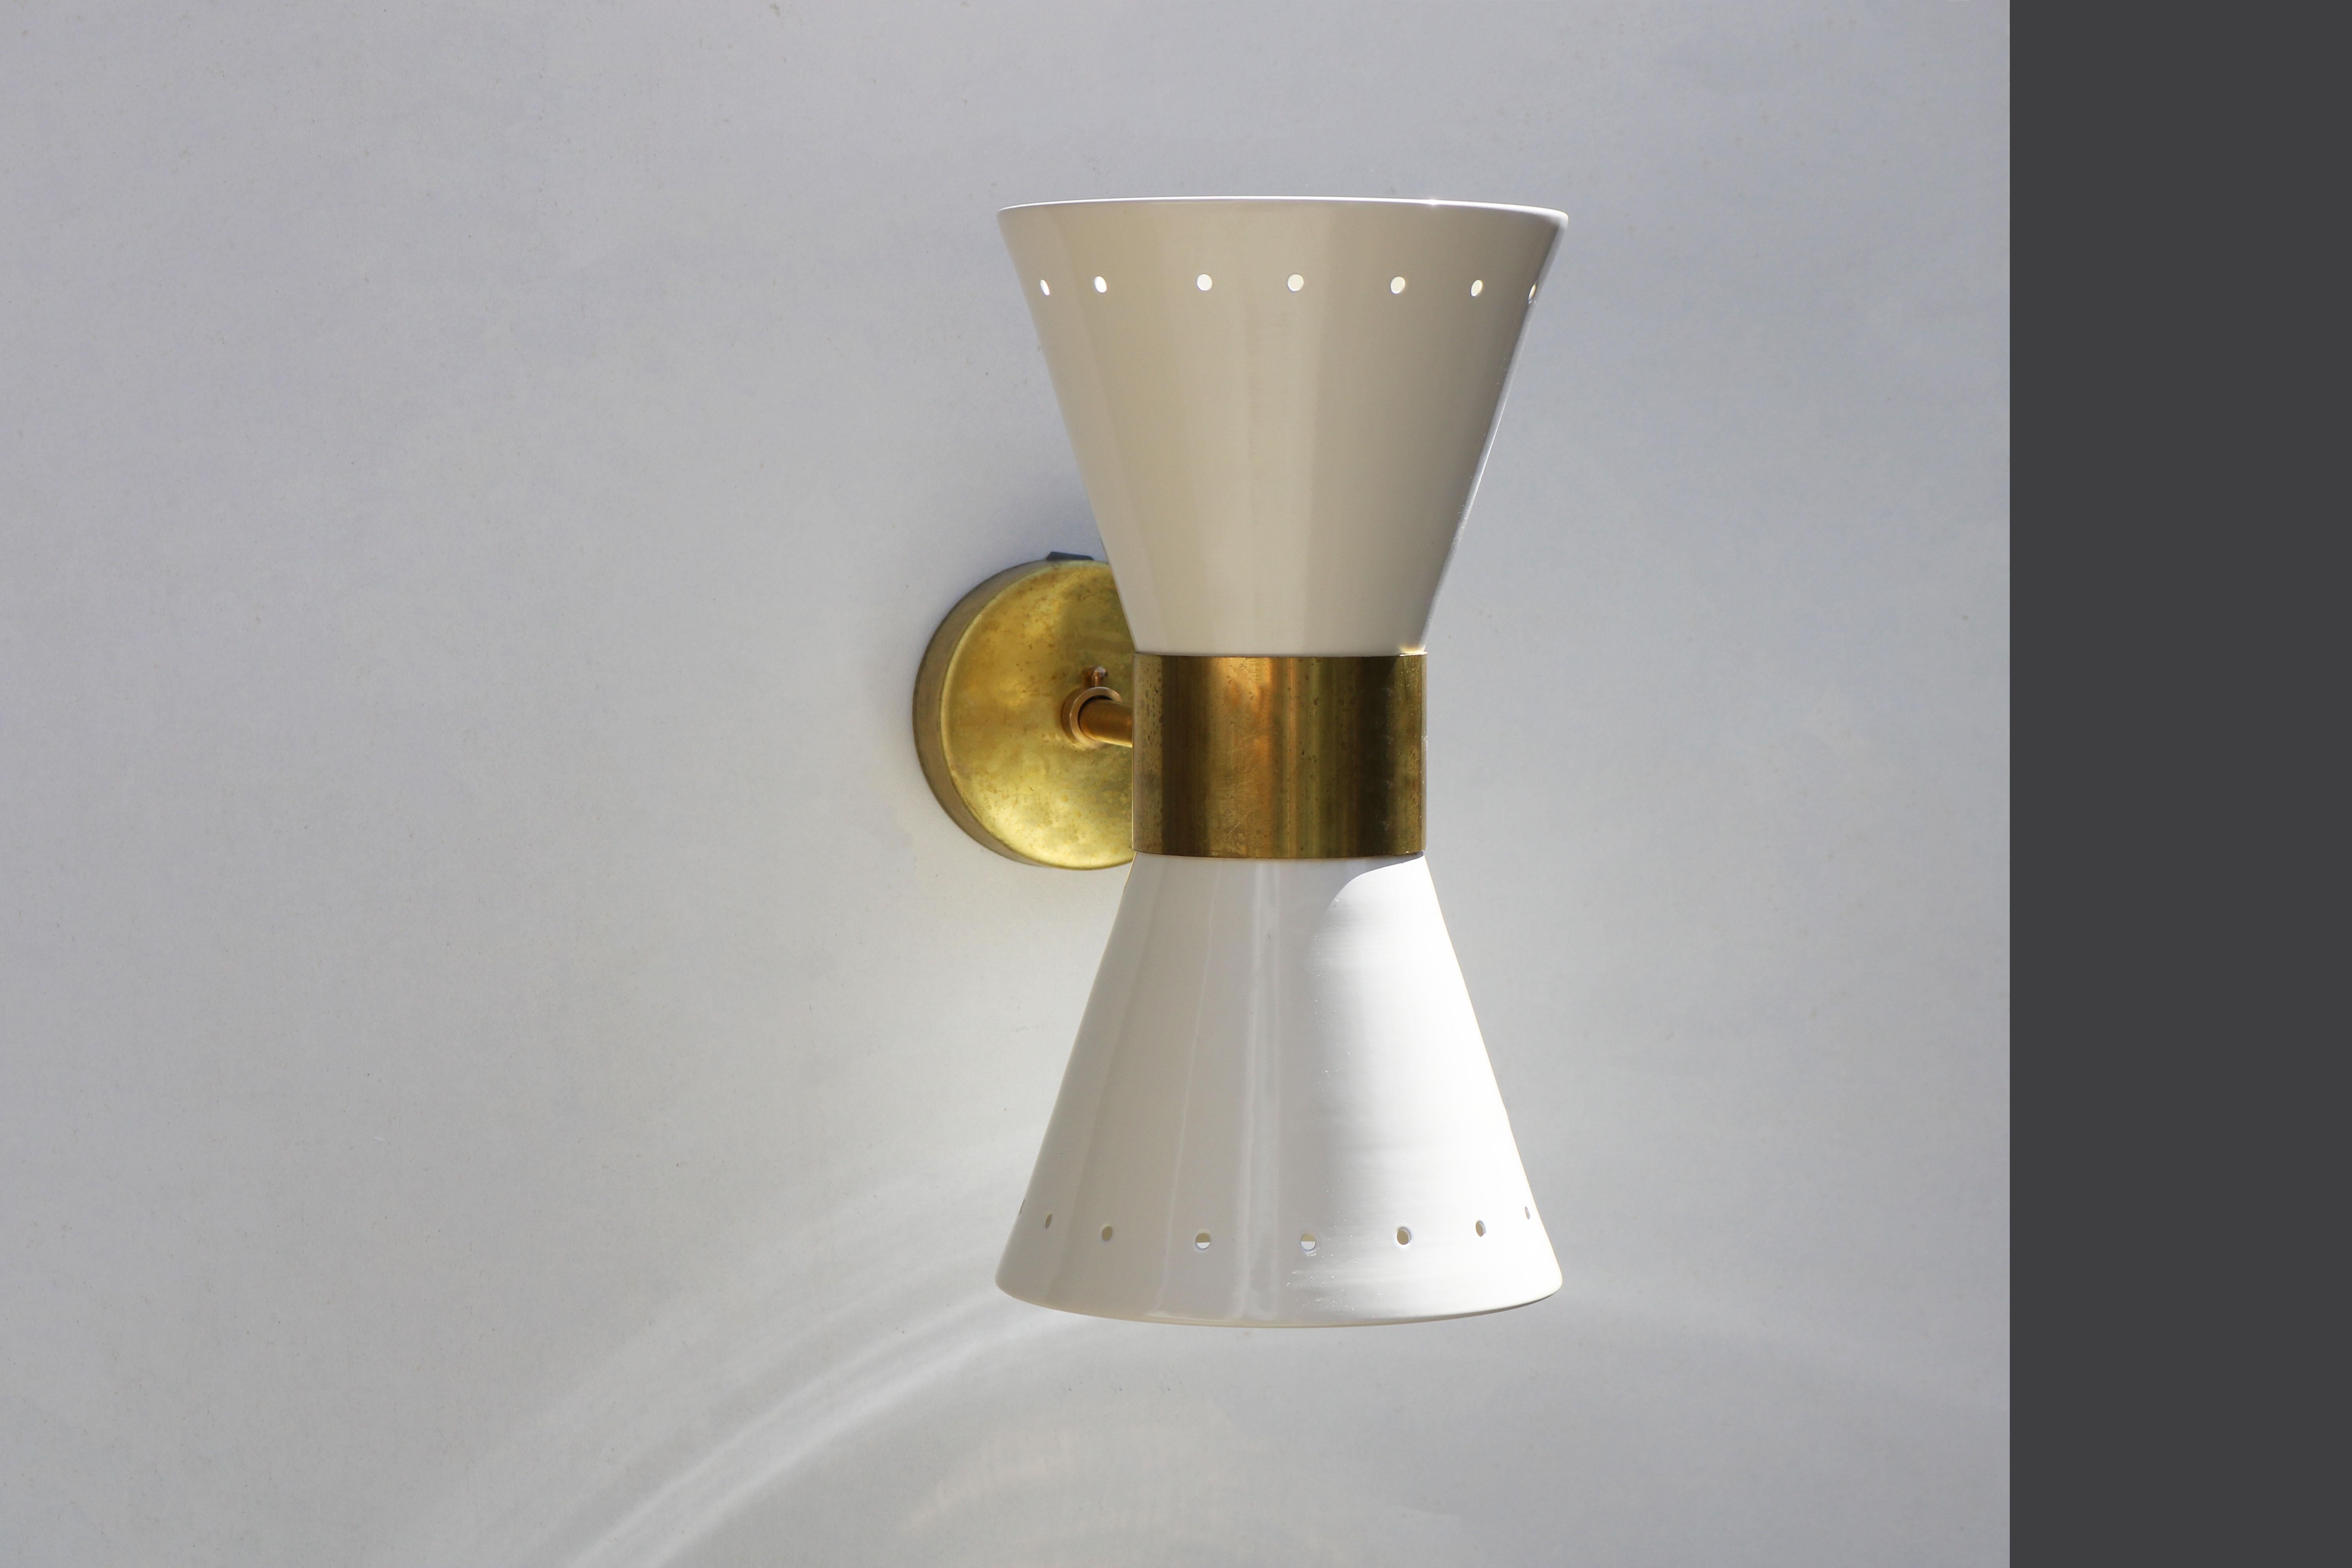 Metal 1 of 6 Italian Modern Design Wall Light Sconces Stilnovo Style Ivory White Brass For Sale